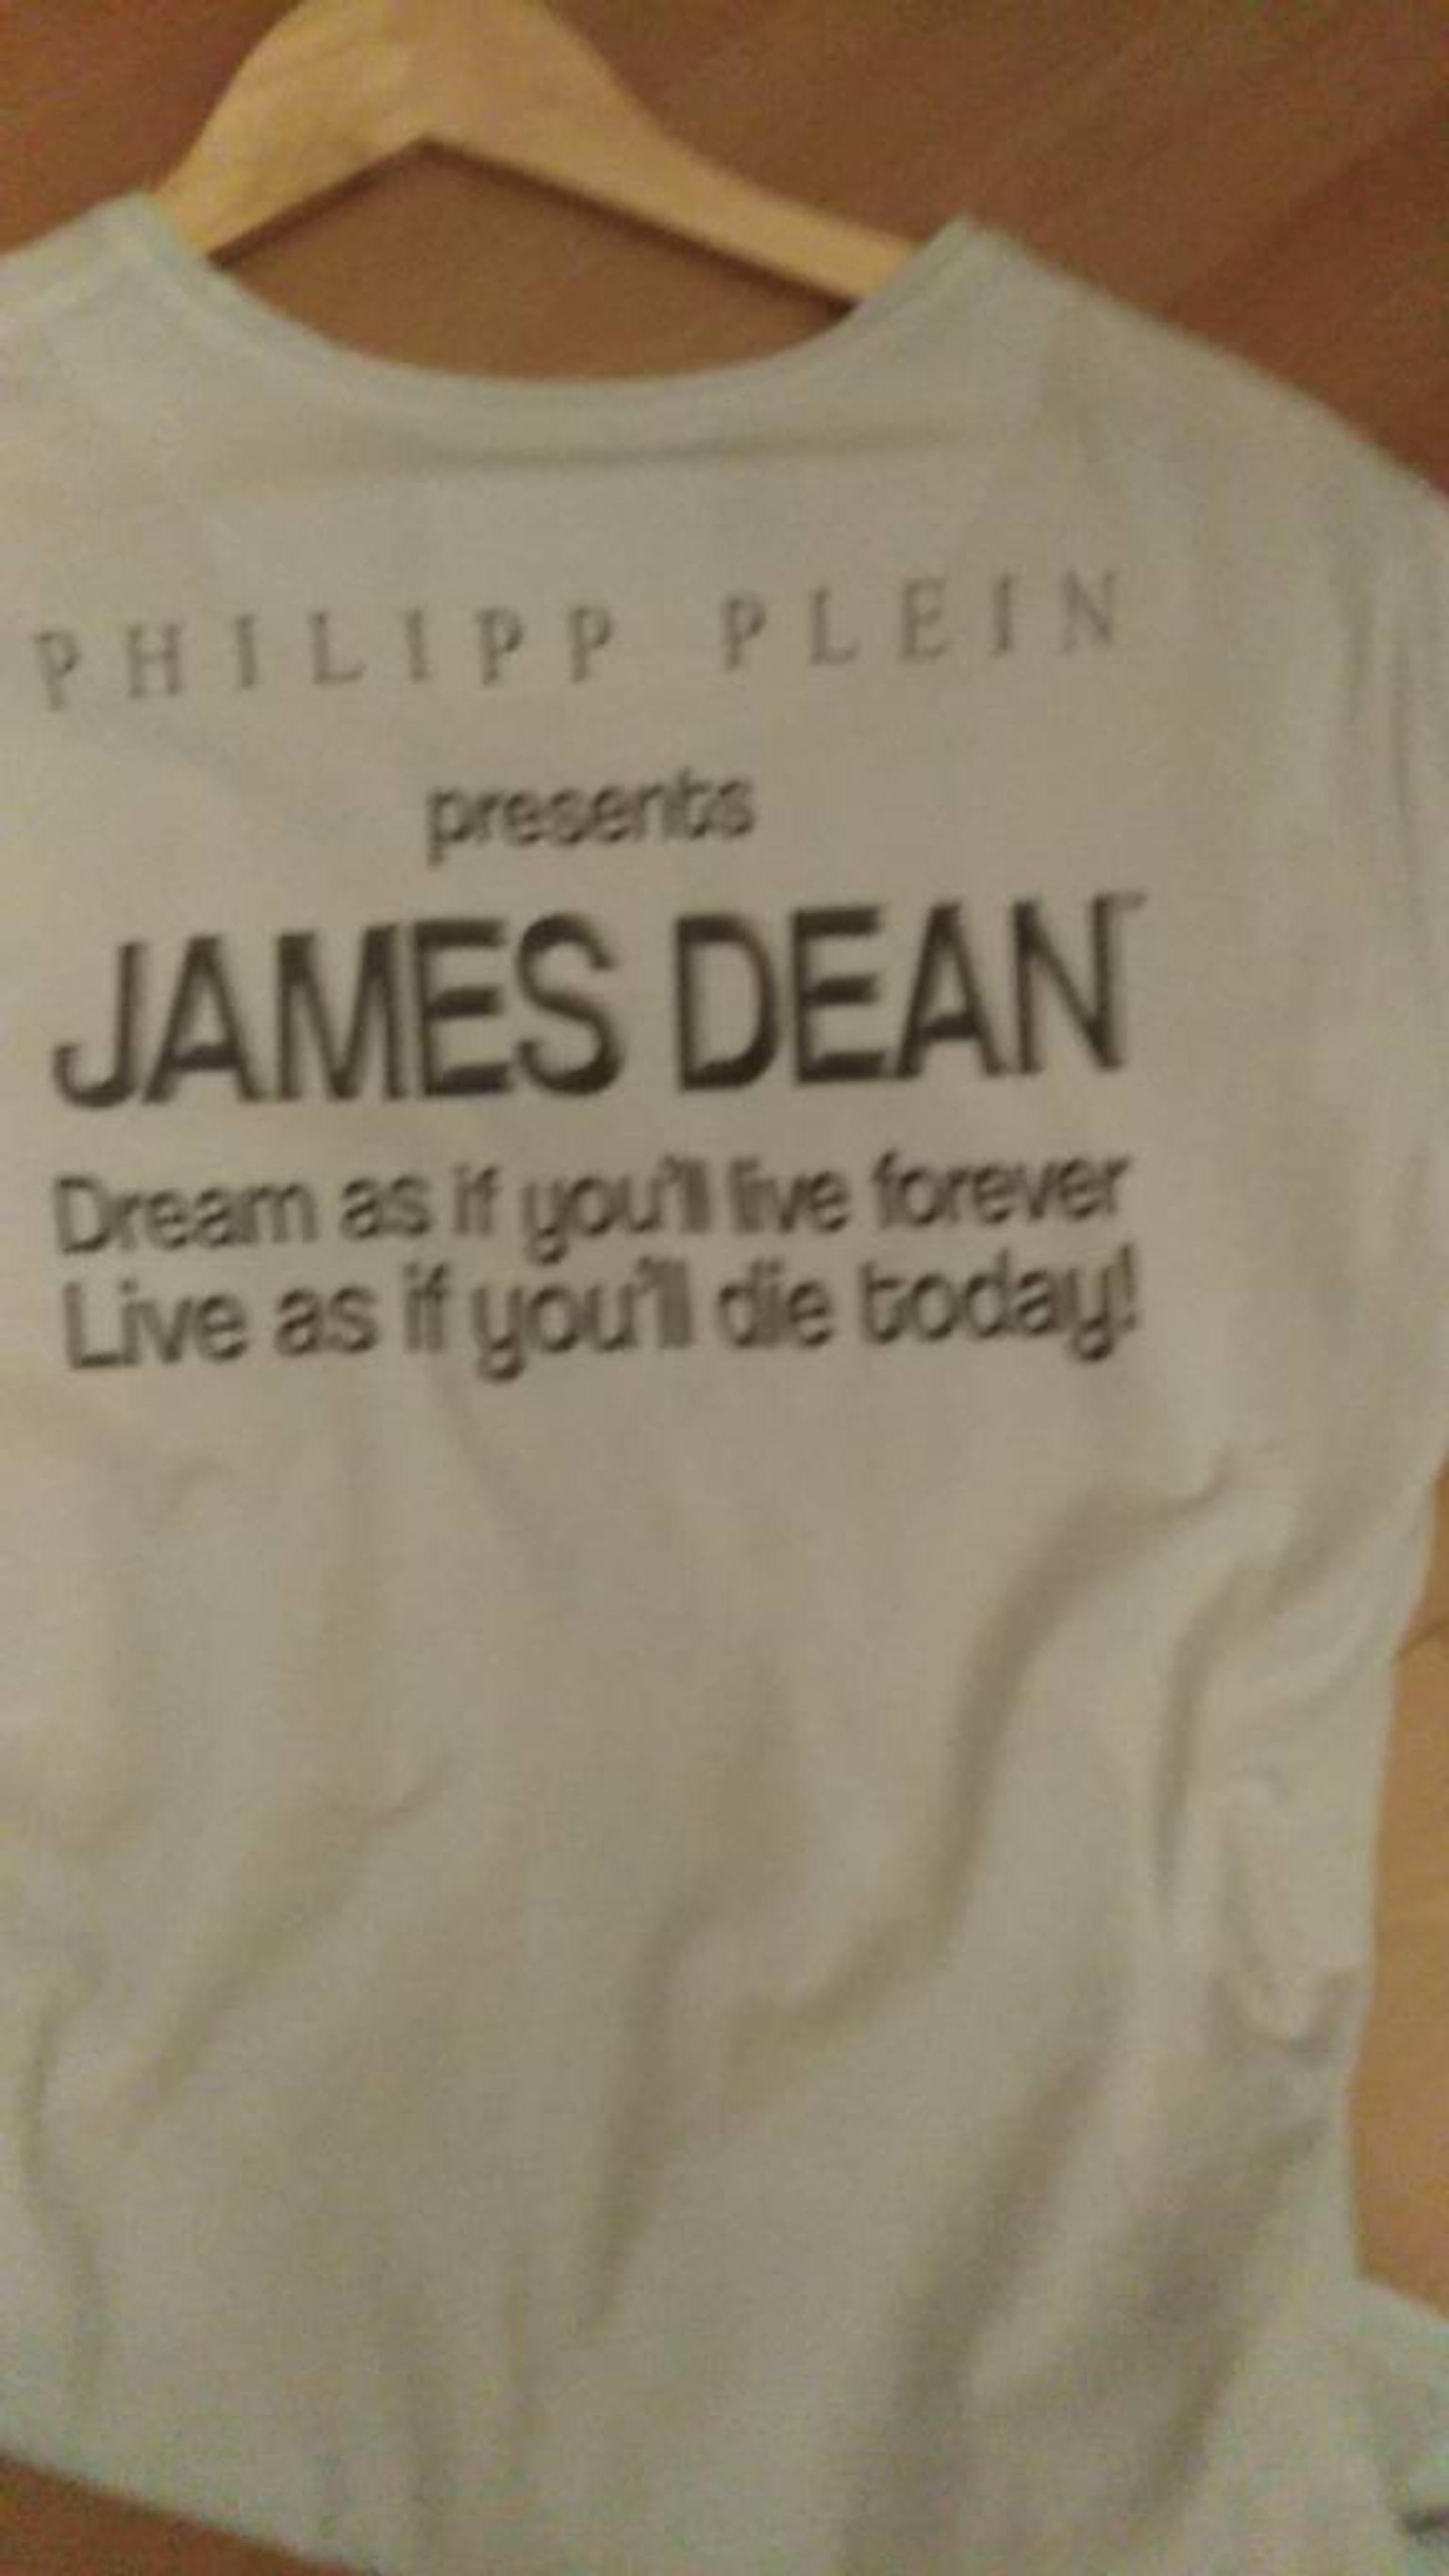 philipp plein james dean t shirt